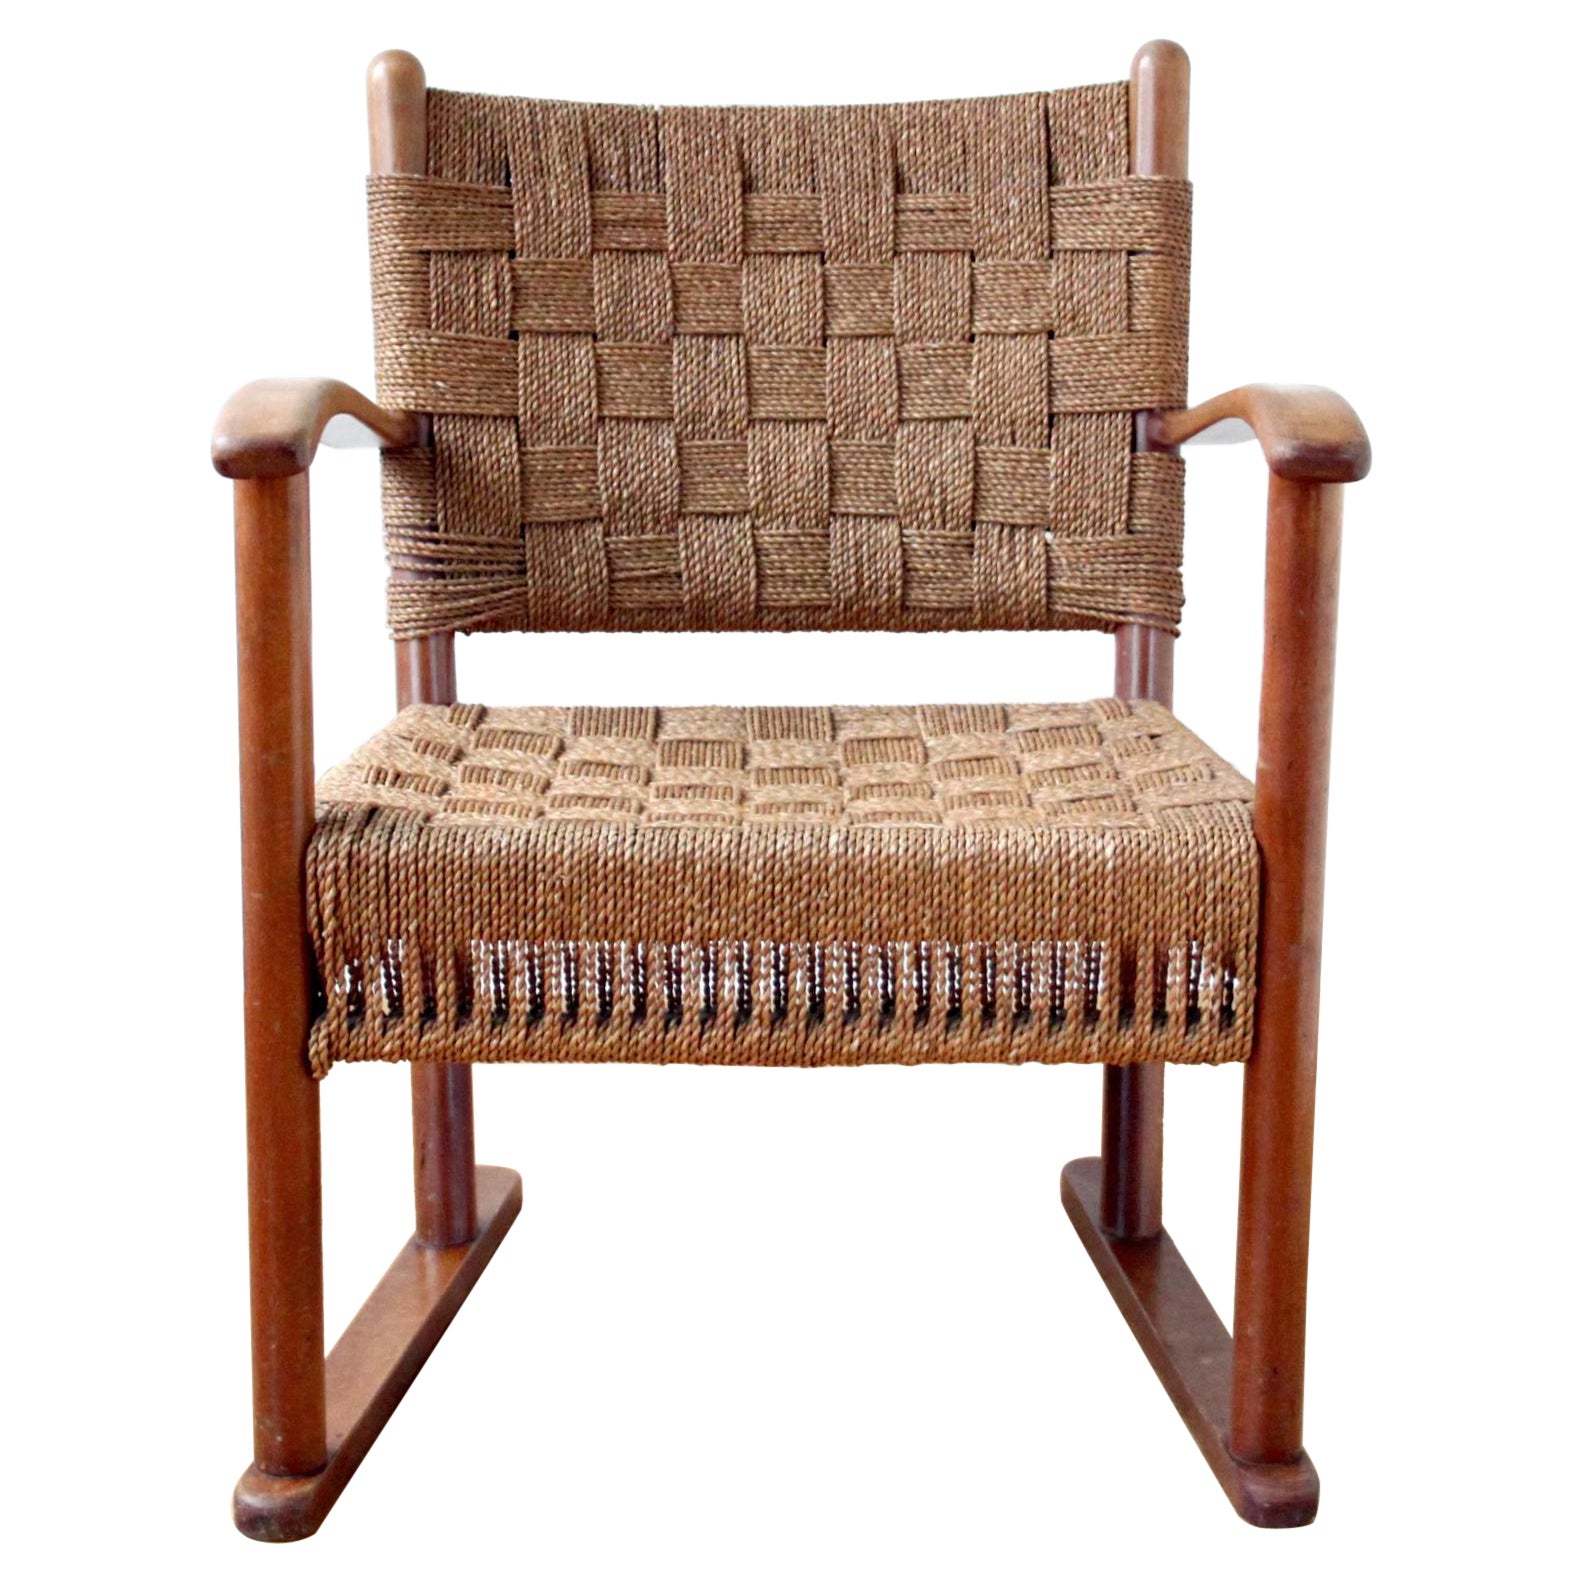 Rare Fritz Hansen Lounge Chair, Beech and Woven Seagrass, Denmark, 1940s